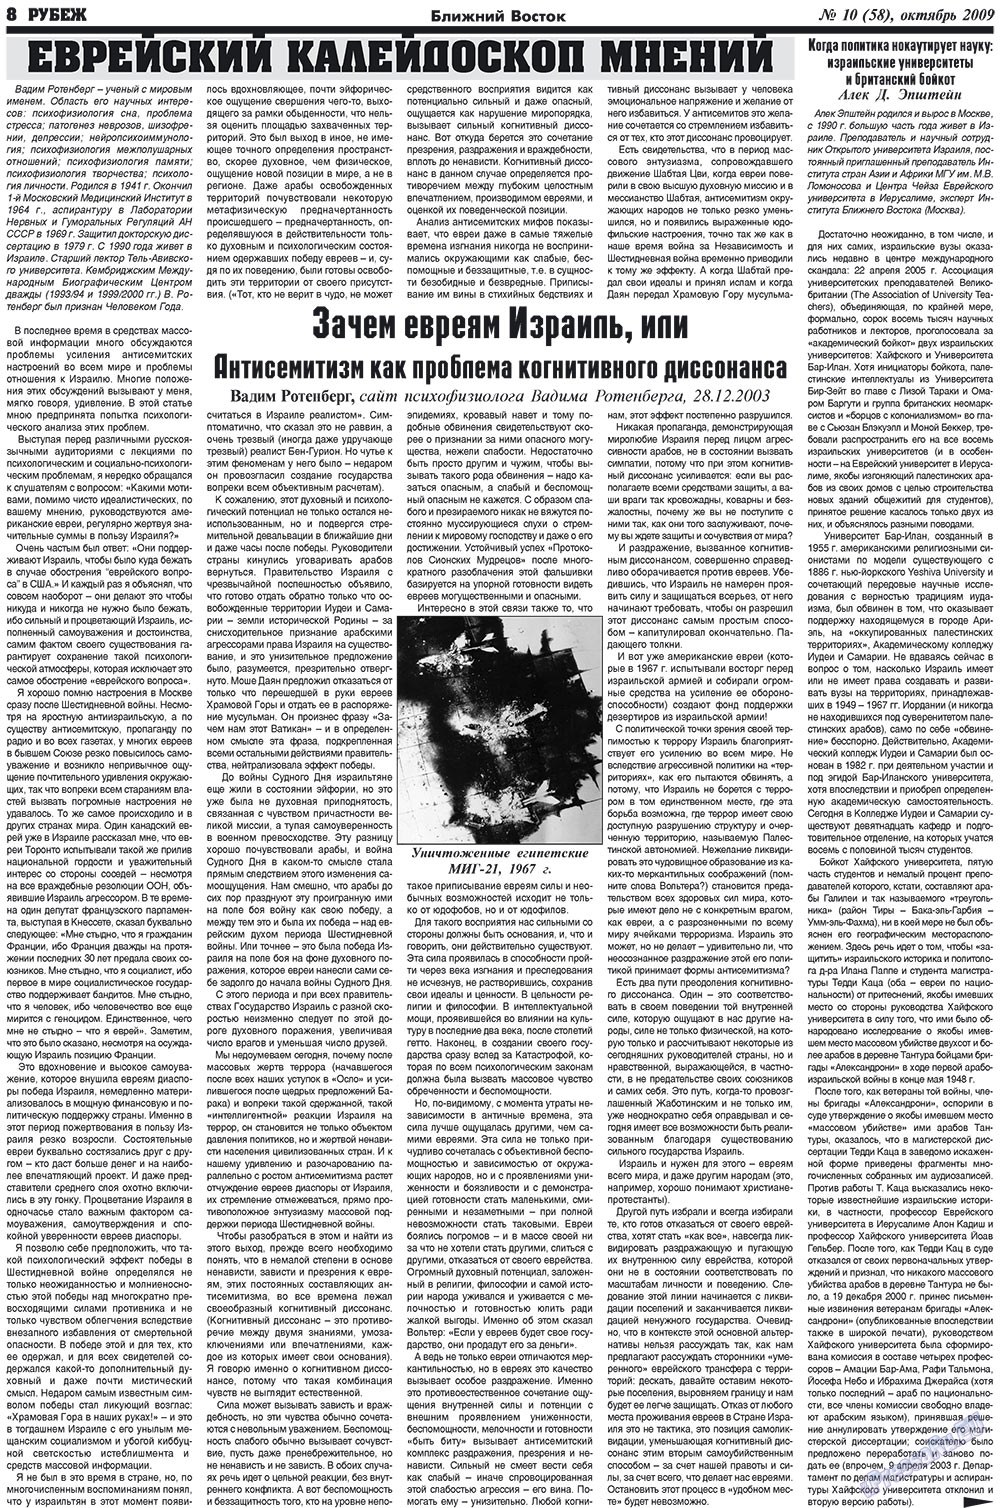 Рубеж (газета). 2009 год, номер 10, стр. 8